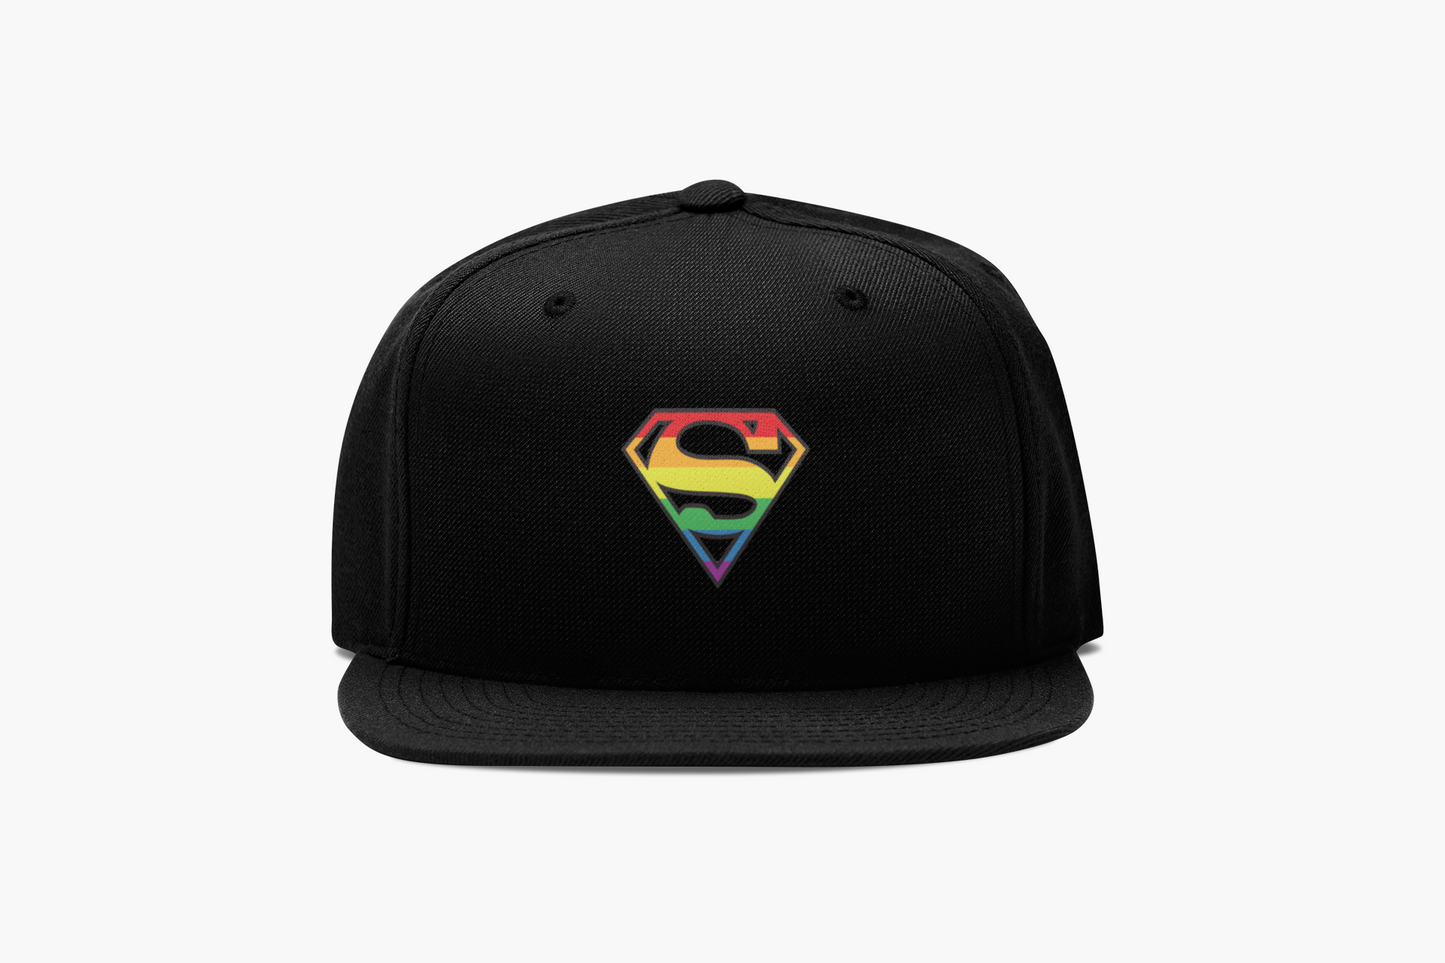 Adult Hat/Cap - Be SUPER